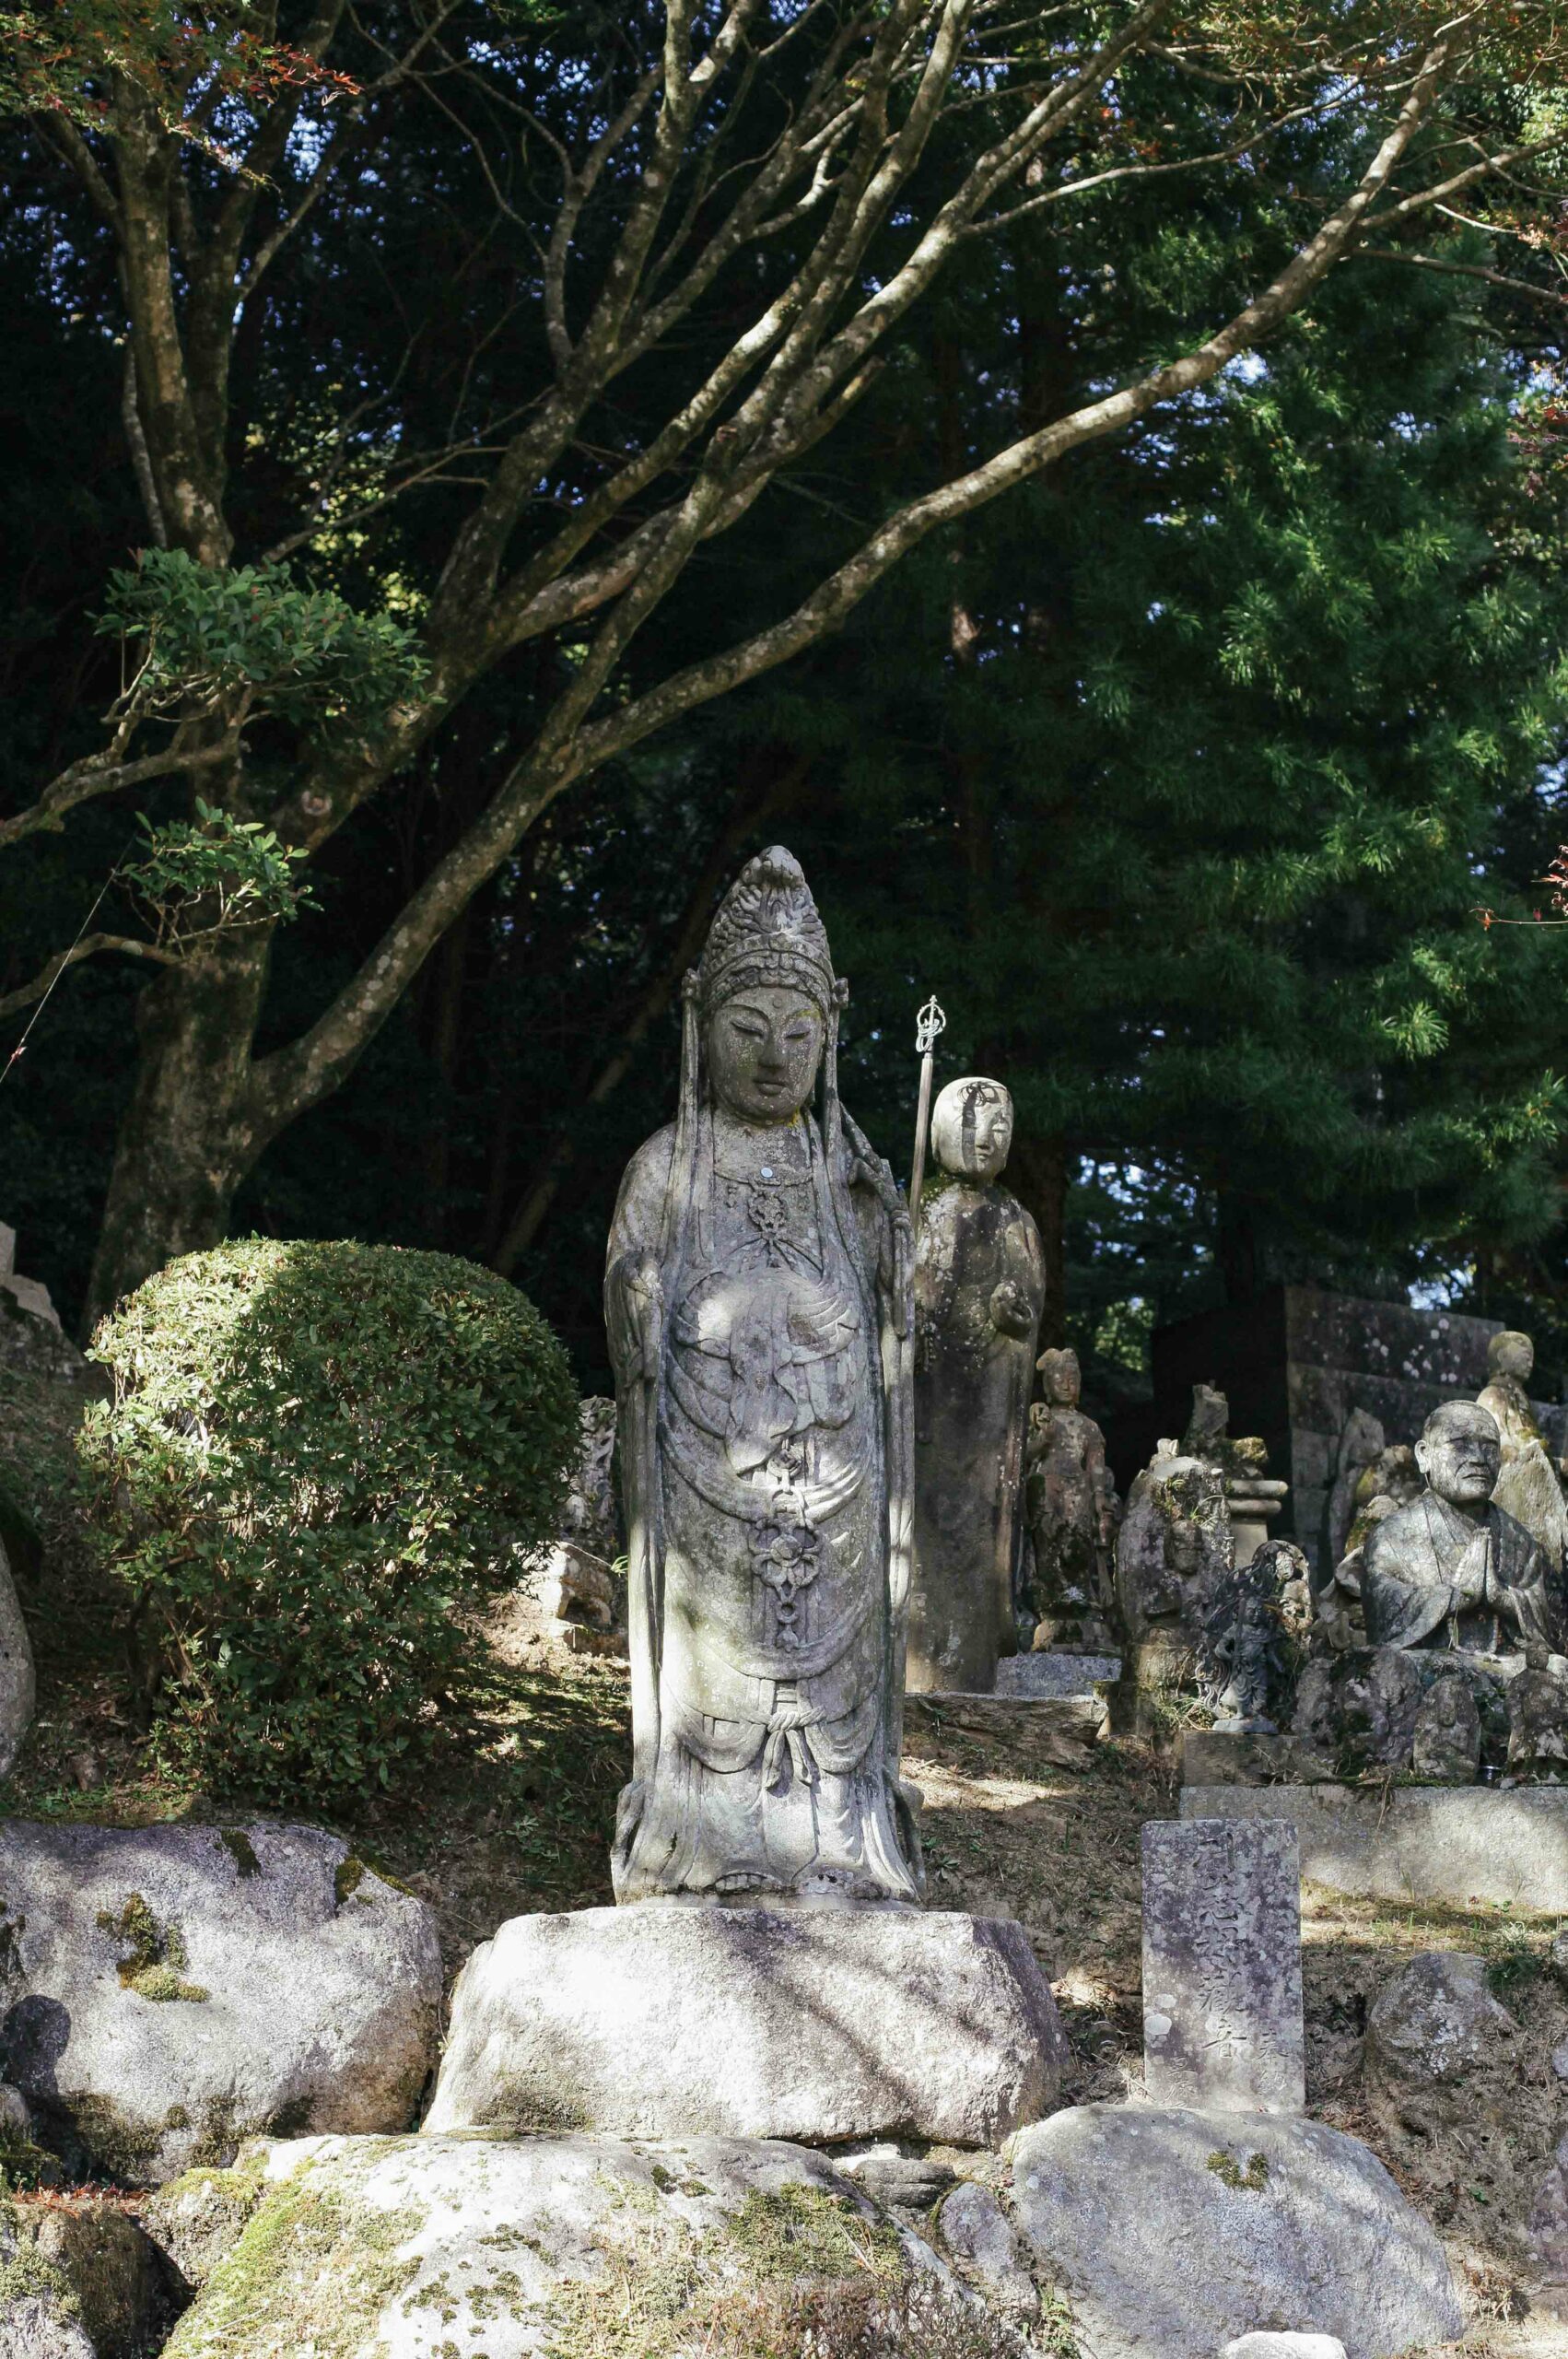 A statue of Kannon Bodhisattva.